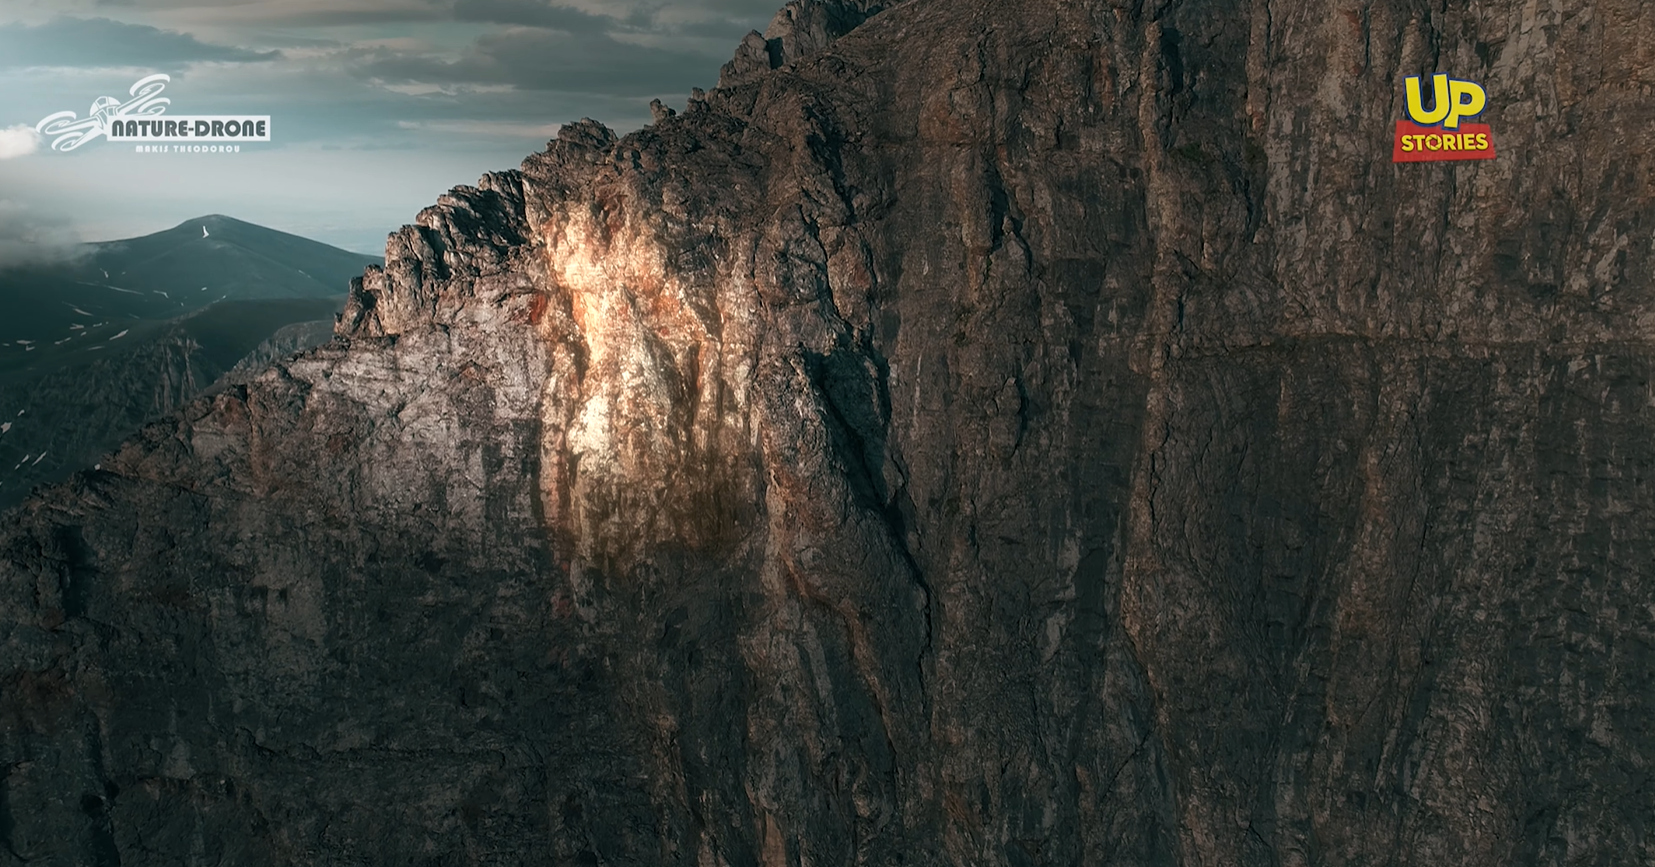 Το άγνωστο “πρόσωπο του Δία” στον Όλυμπο. Δείτε τον μυστηριώδη σχηματισμό βράχων σε ύψος 2.900 μέτρων (drone)